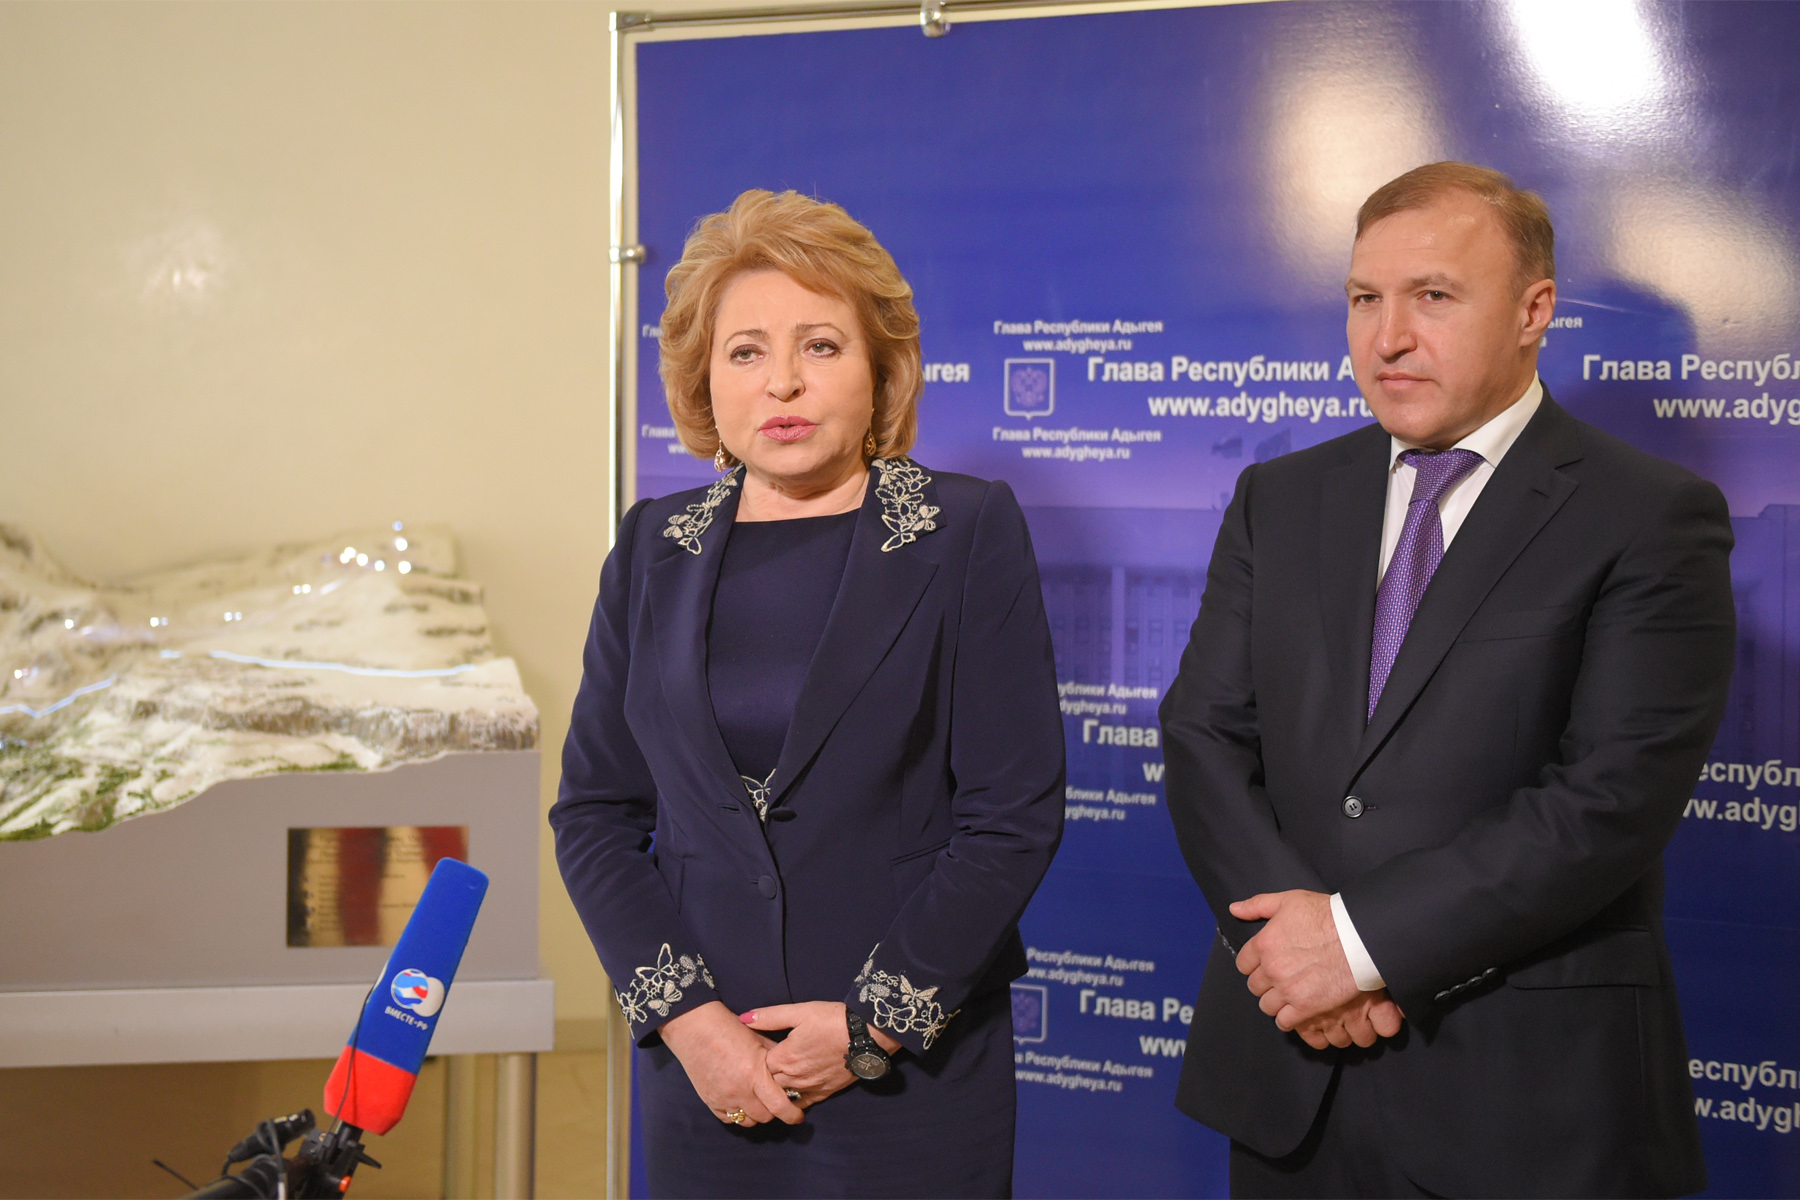 Адыгею с рабочим визитом посетила Председатель Совета Федерации Федерального Собрания РФ